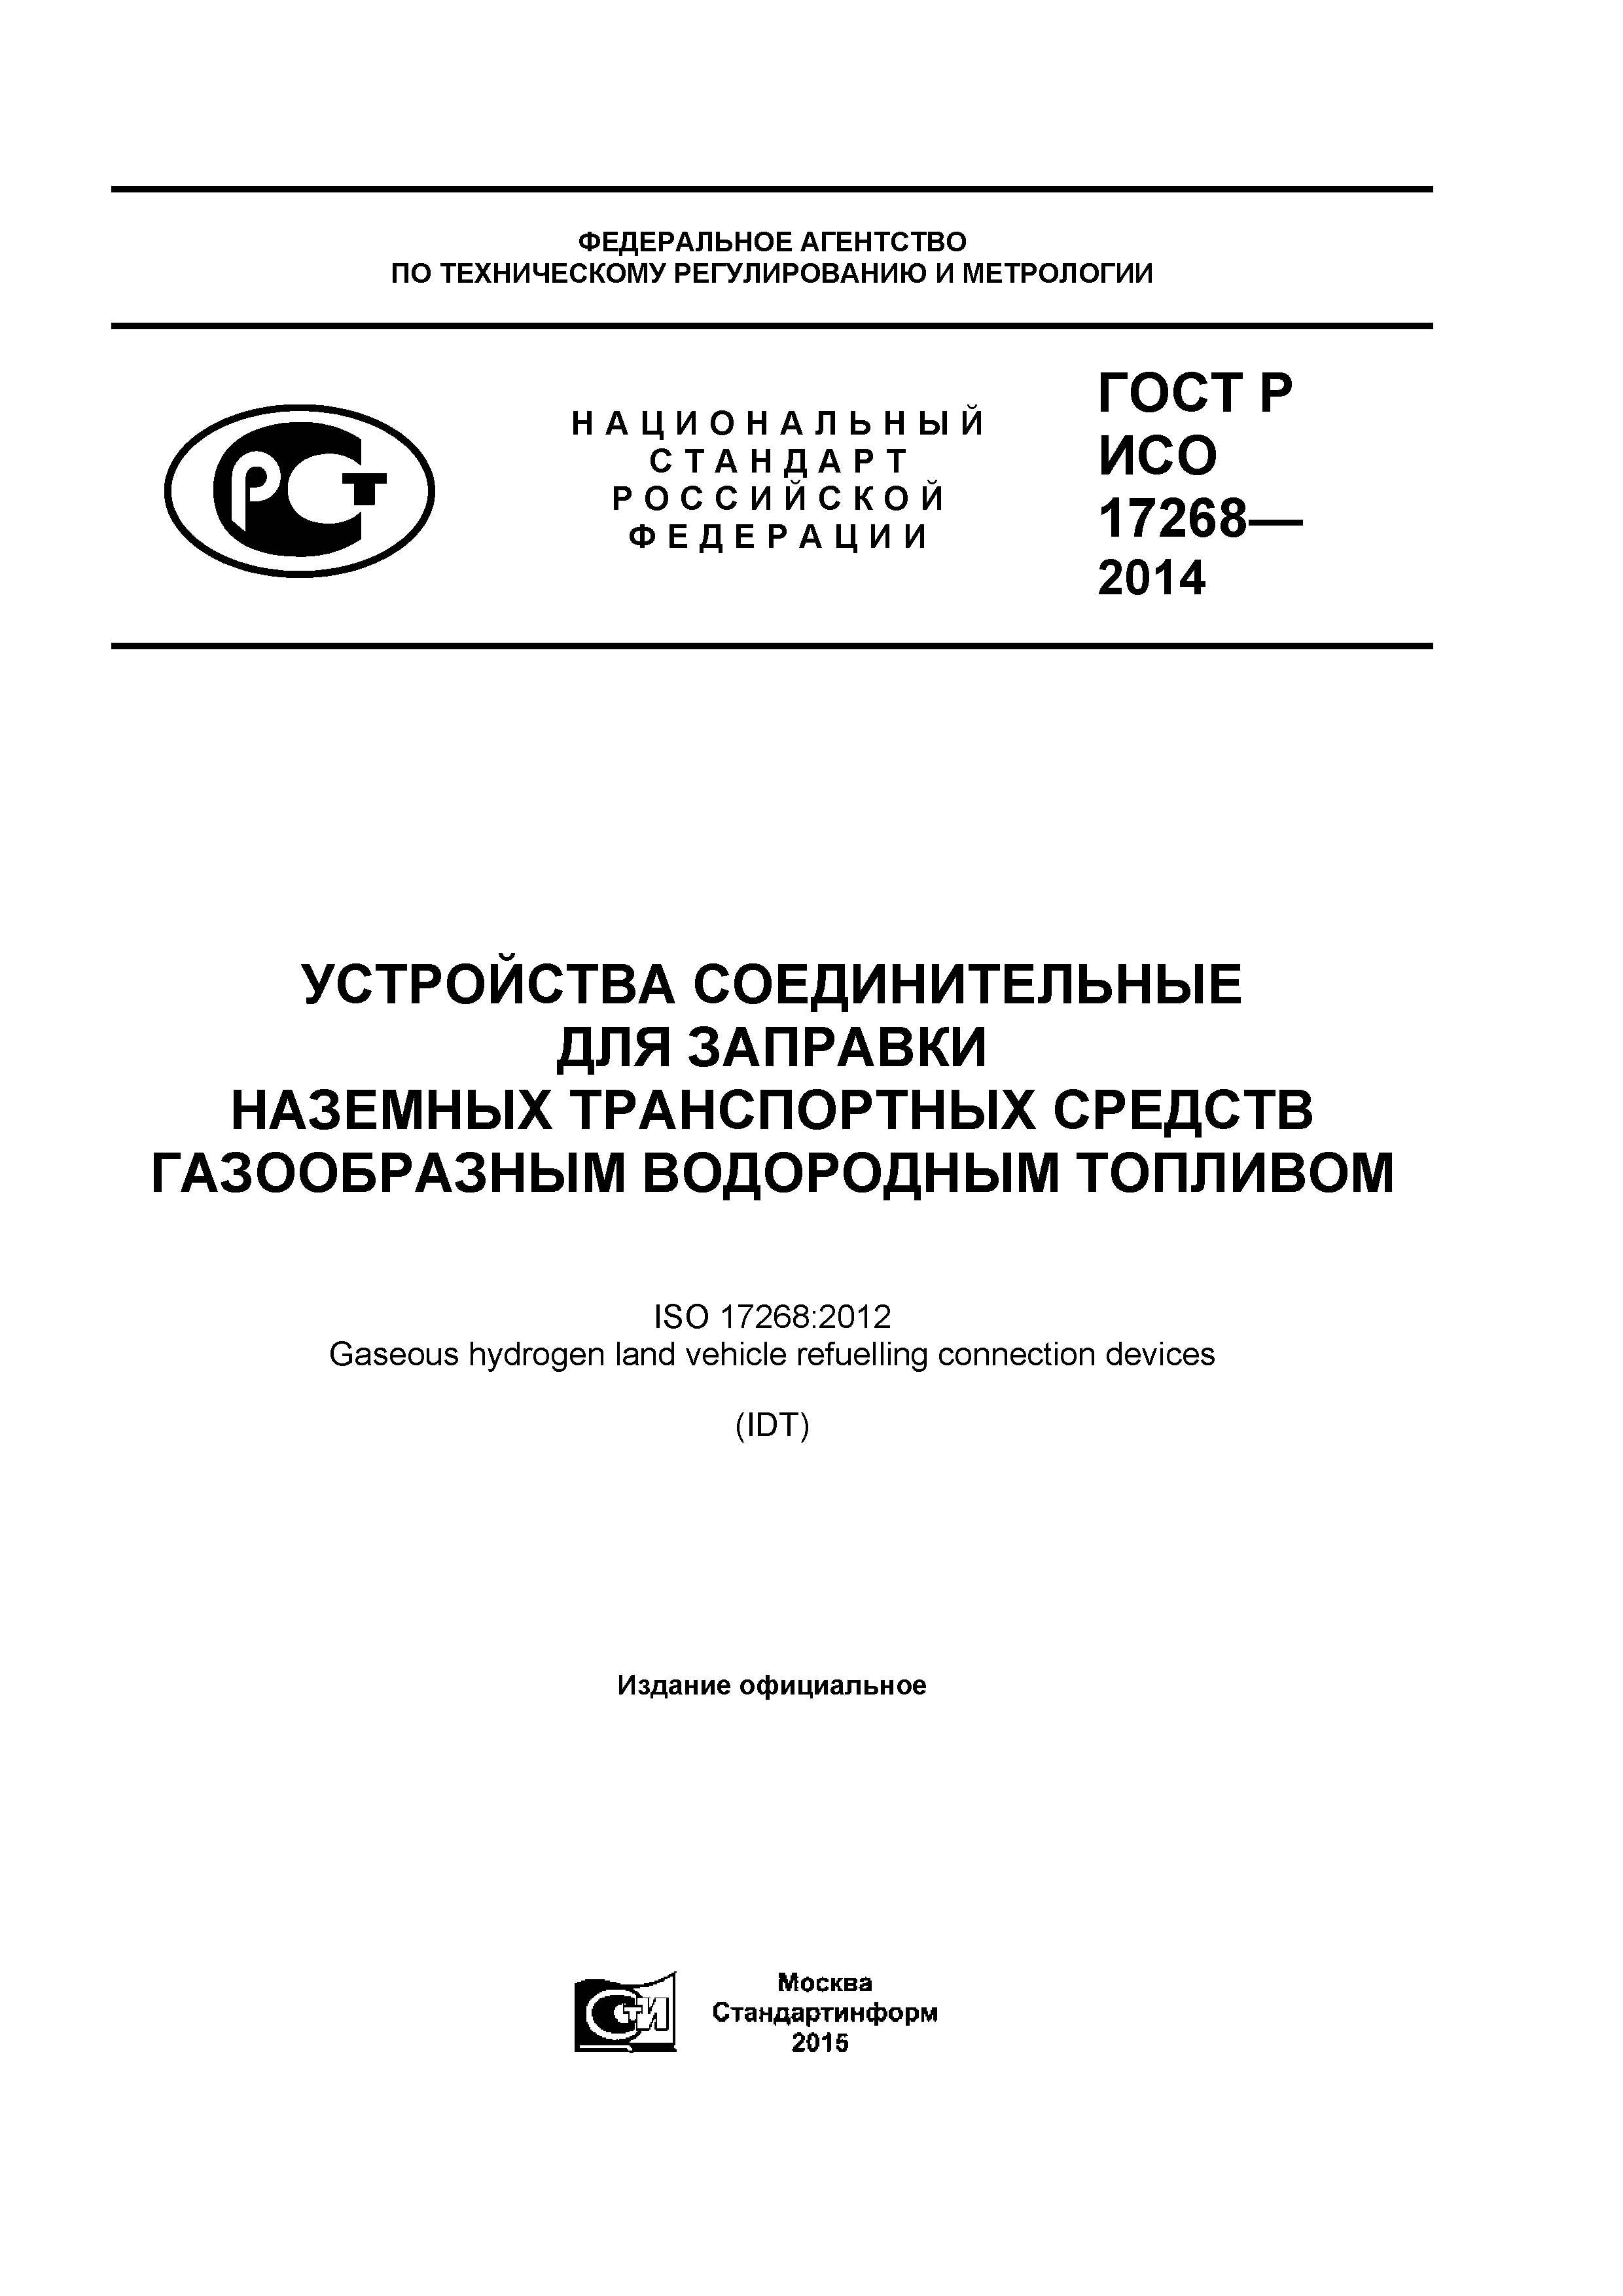 ГОСТ Р ИСО 17268-2014